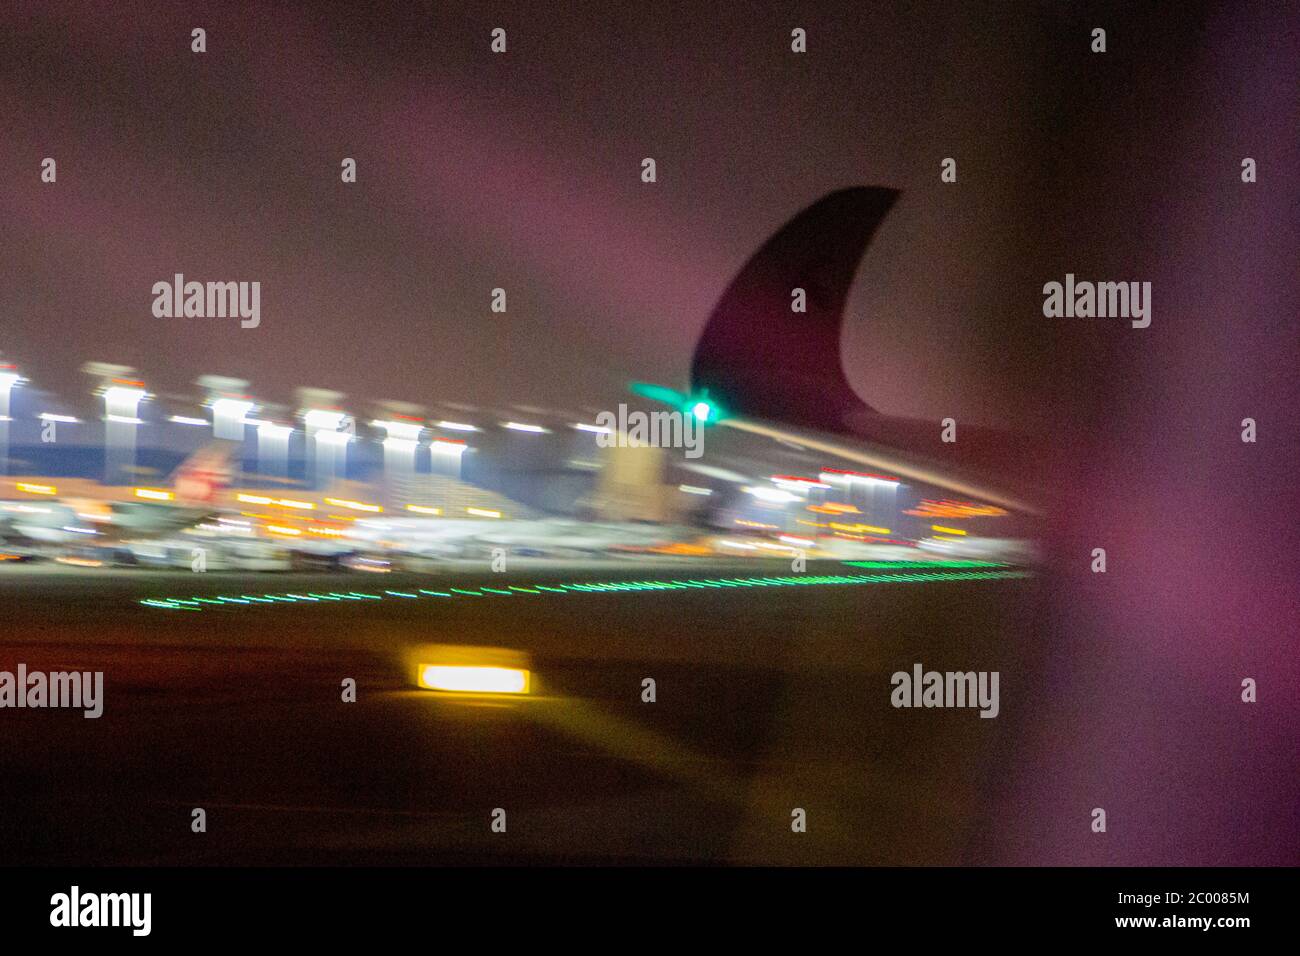 Vol à l'aéroport international de Doha pendant le confinement causé par le virus COVID-19. Dans le monde entier, l'industrie du trafic aérien est fortement touchée par la baisse massive du trafic. Banque D'Images